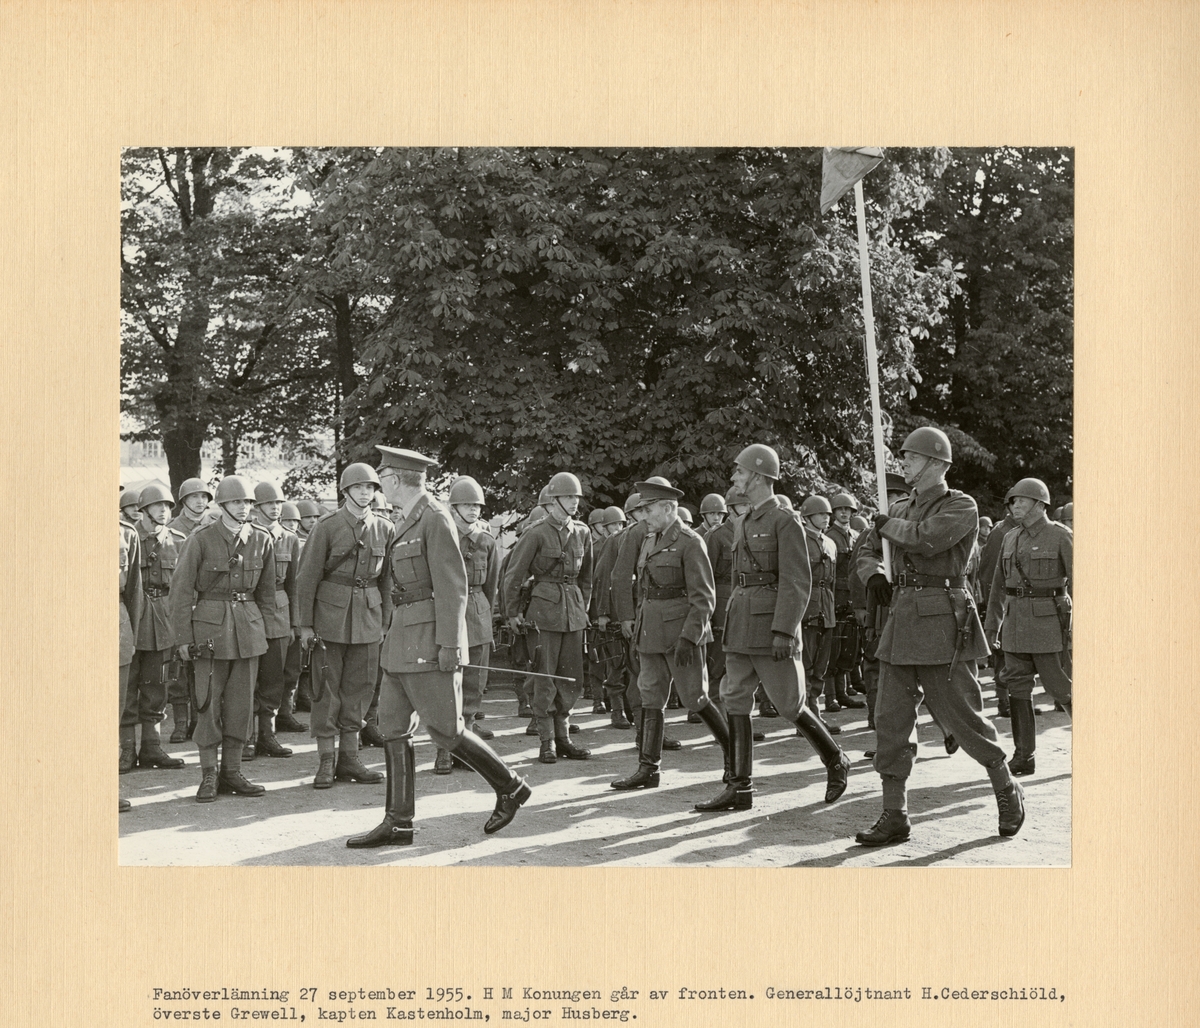 Text i fotoalbum: "Fanöverlämning 27 september 1955. H M Konungen går av fronten. Generallöjtnant H. Cederschiöld, överste Grewell, kapten Kastenholm, major Husberg."